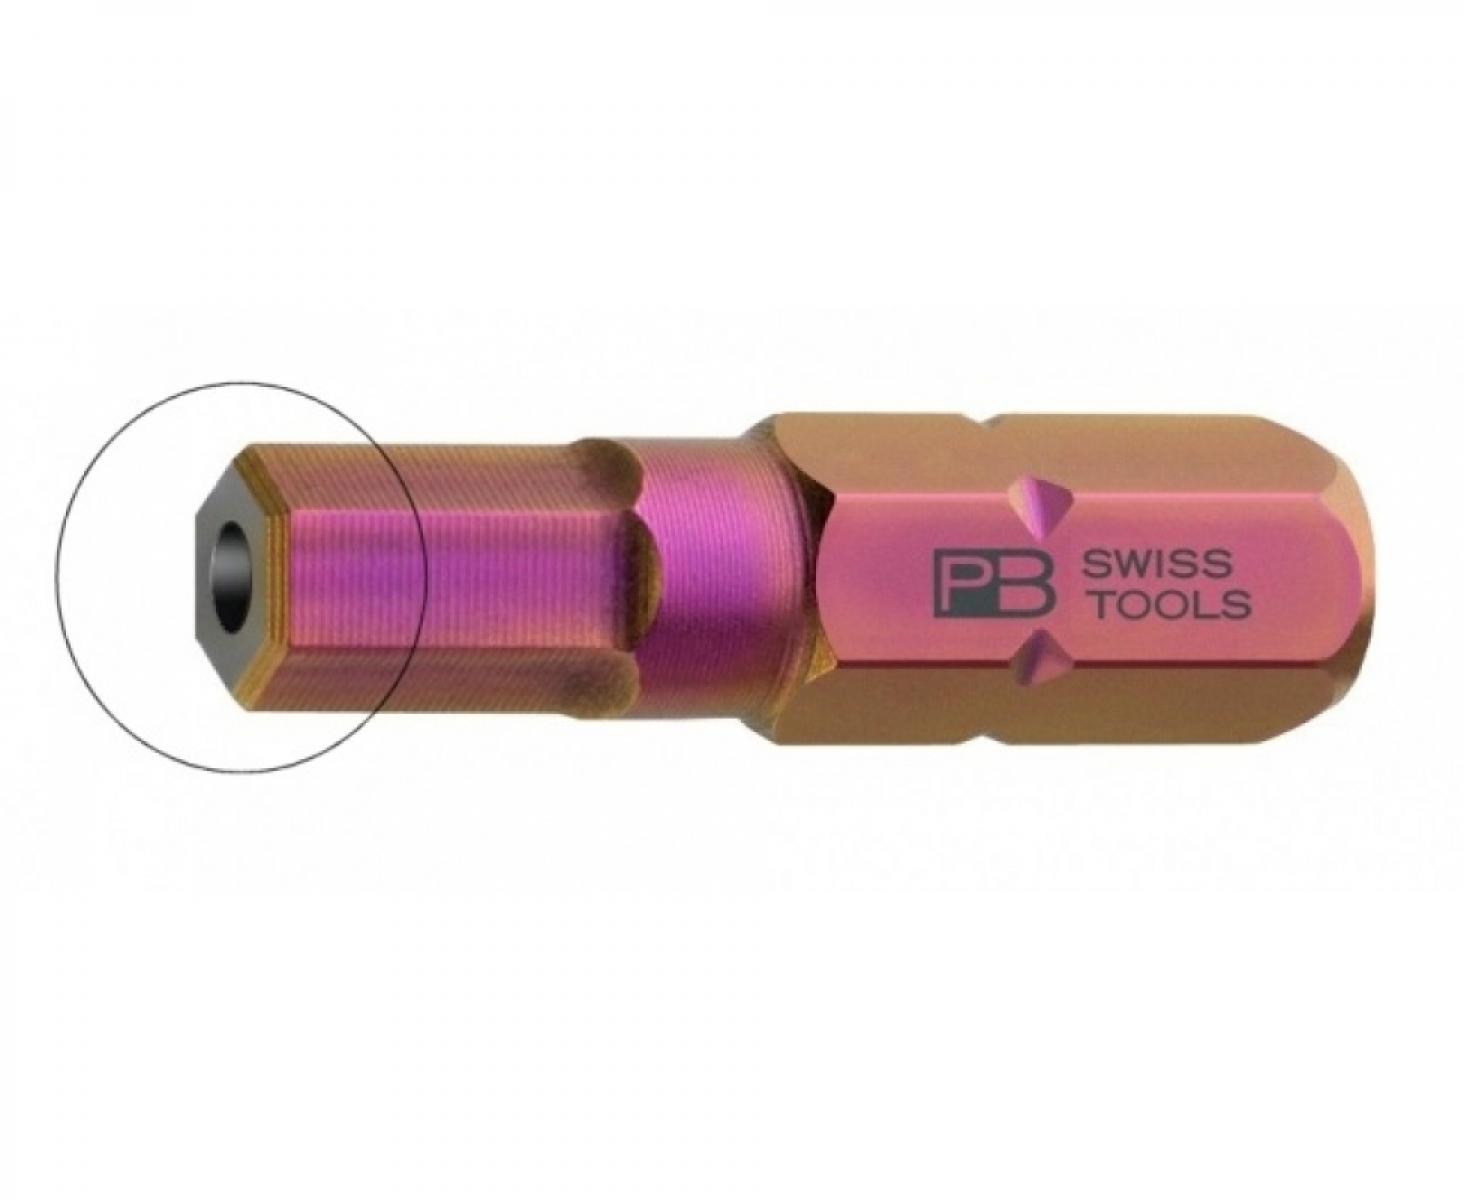 Бита HEX BO PrecisionBits C6,3 с внешним шестигранником 1/4 с отверстием PB Swiss Tools PB C6.210B/5 M5